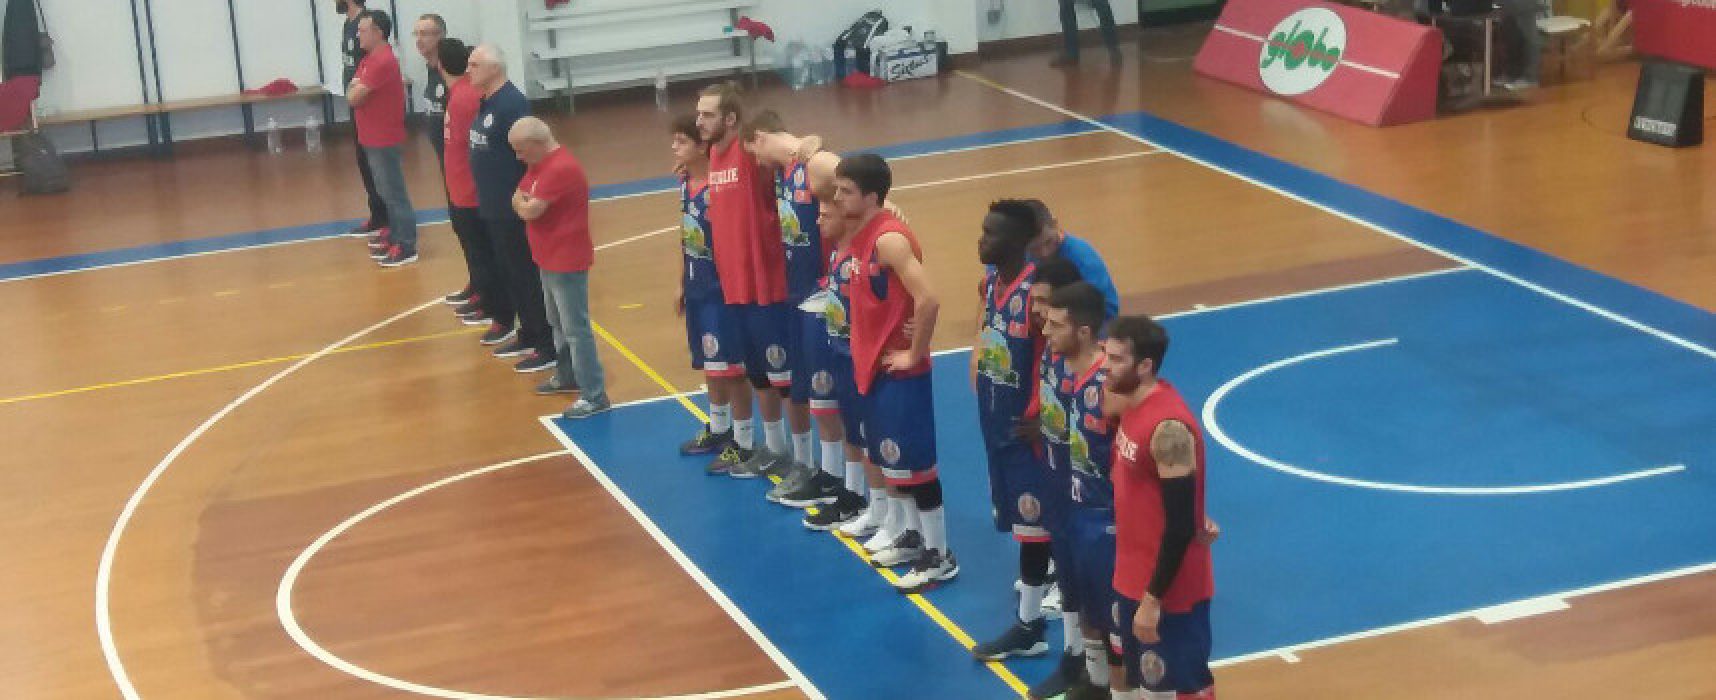 Basket, pesantissima sconfitta contro Giulianova per la Di Pinto Panifici